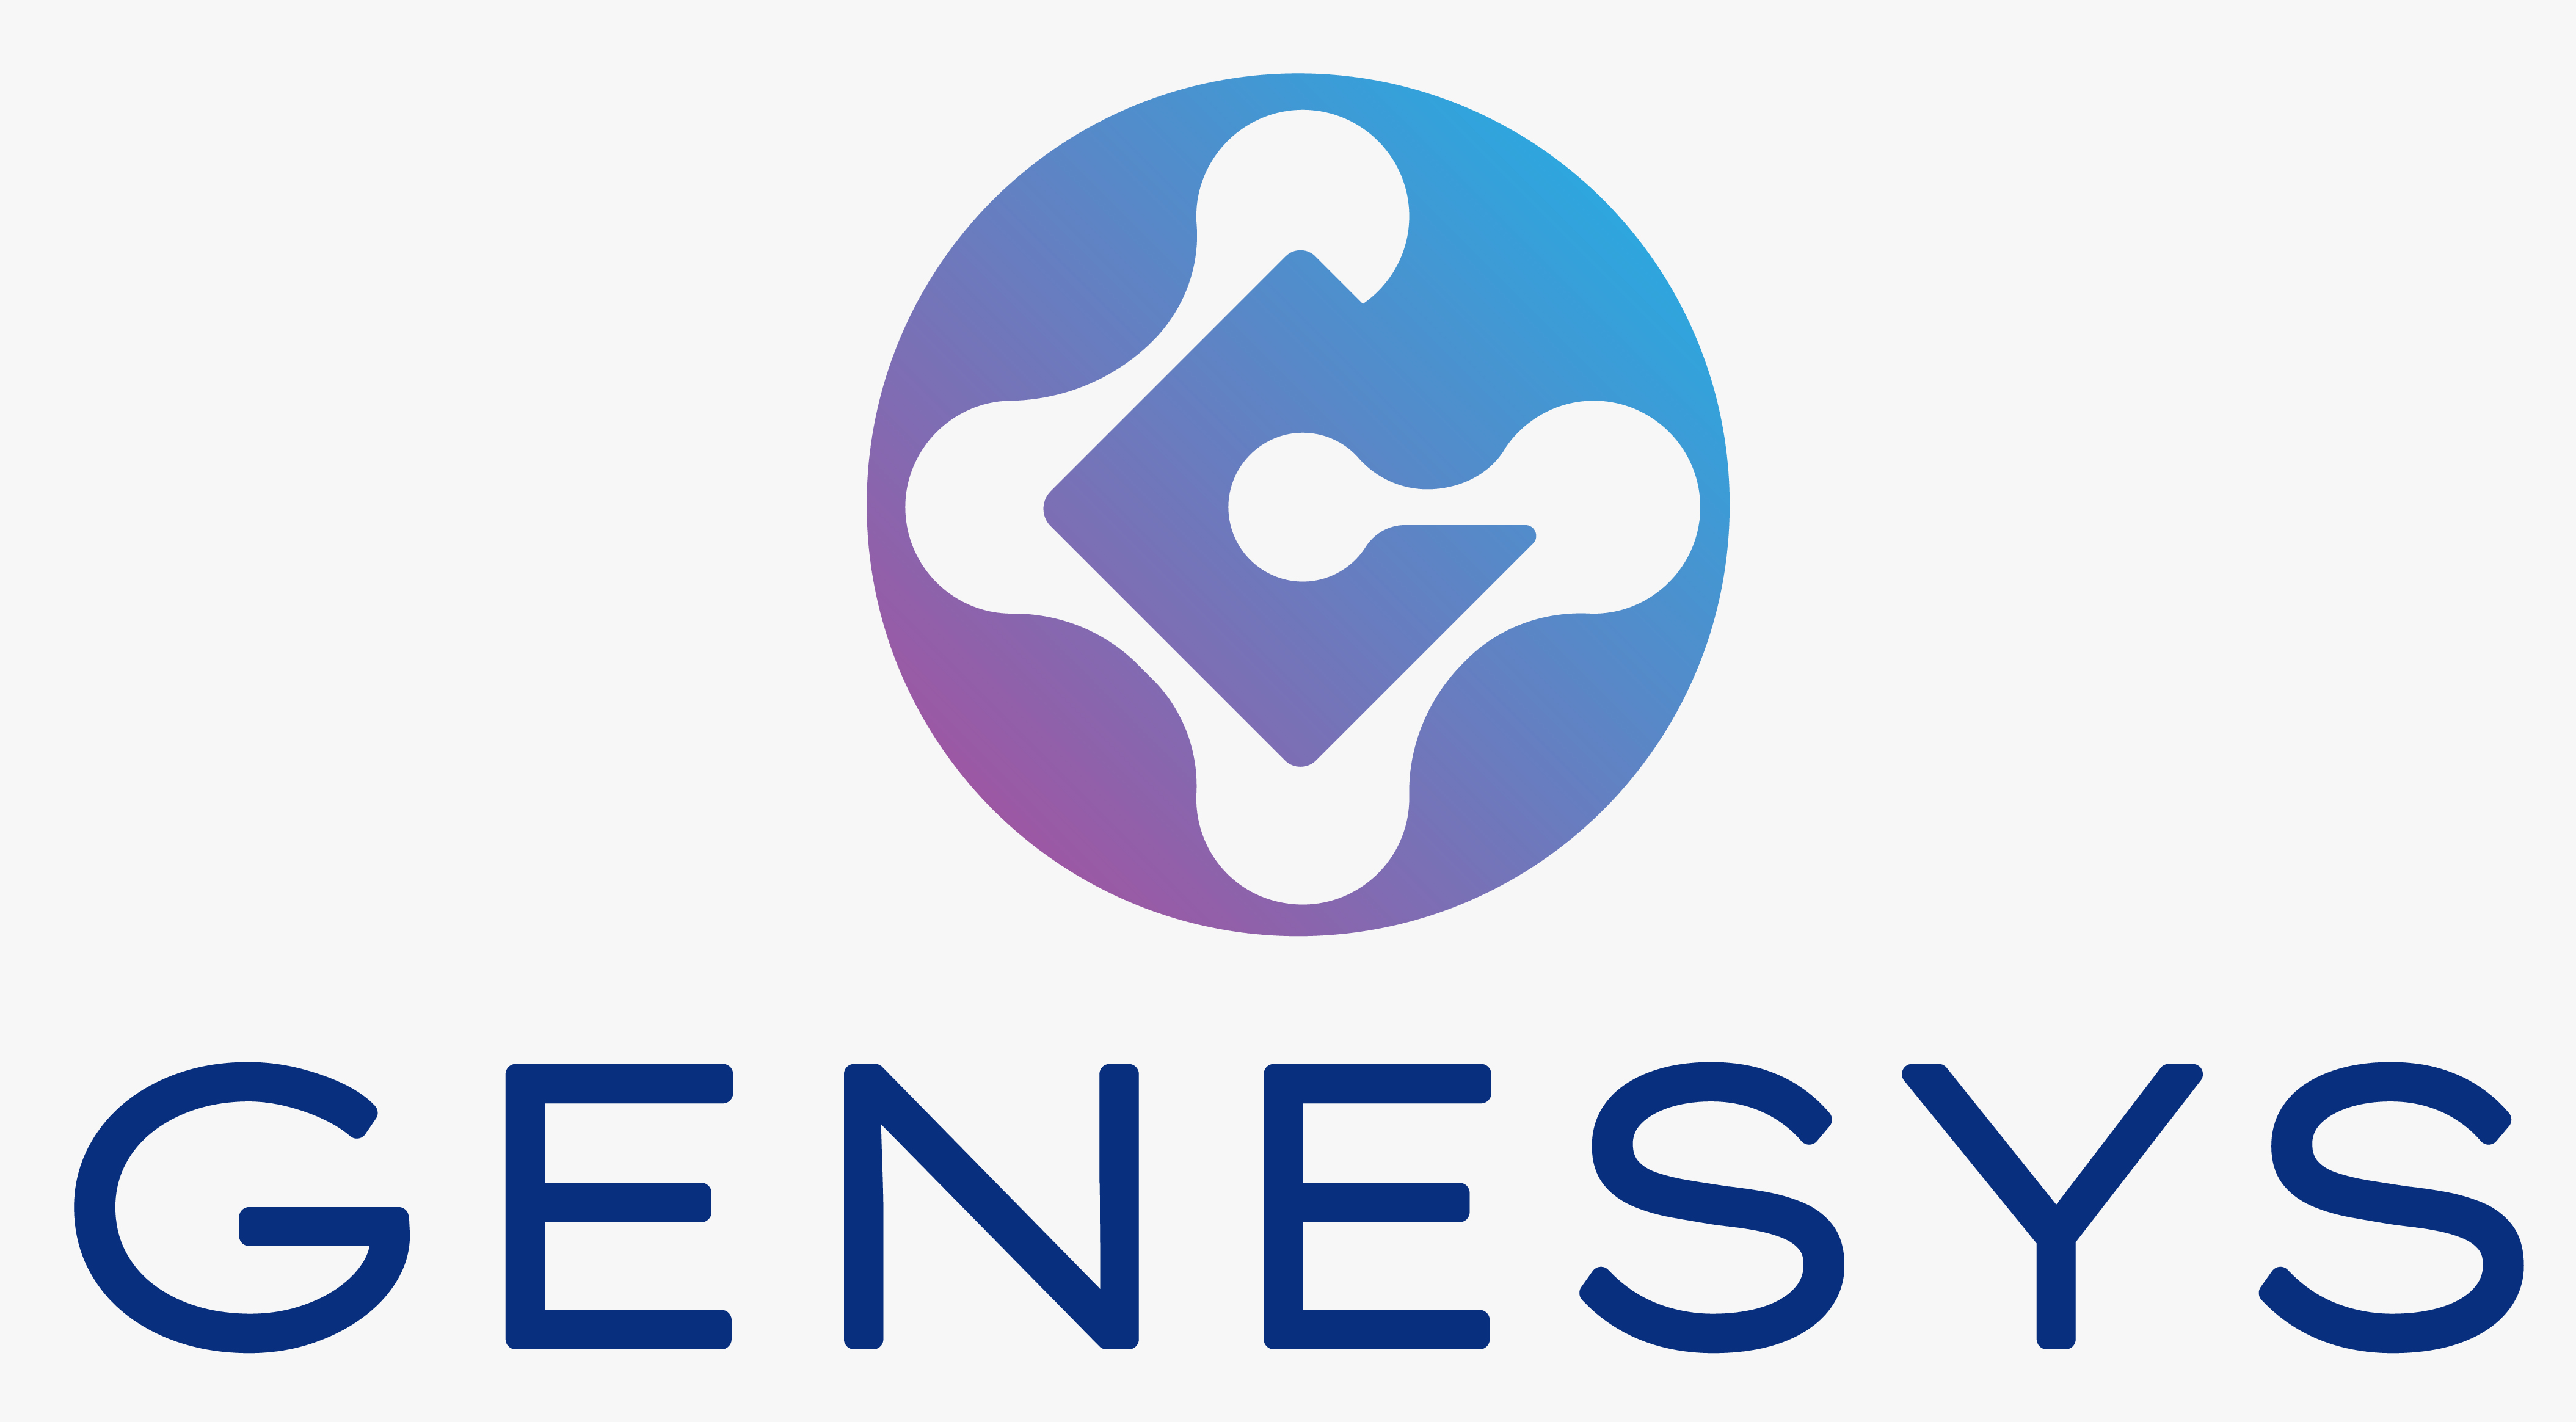 Genesys Network Blockchain Ecosystem Logo